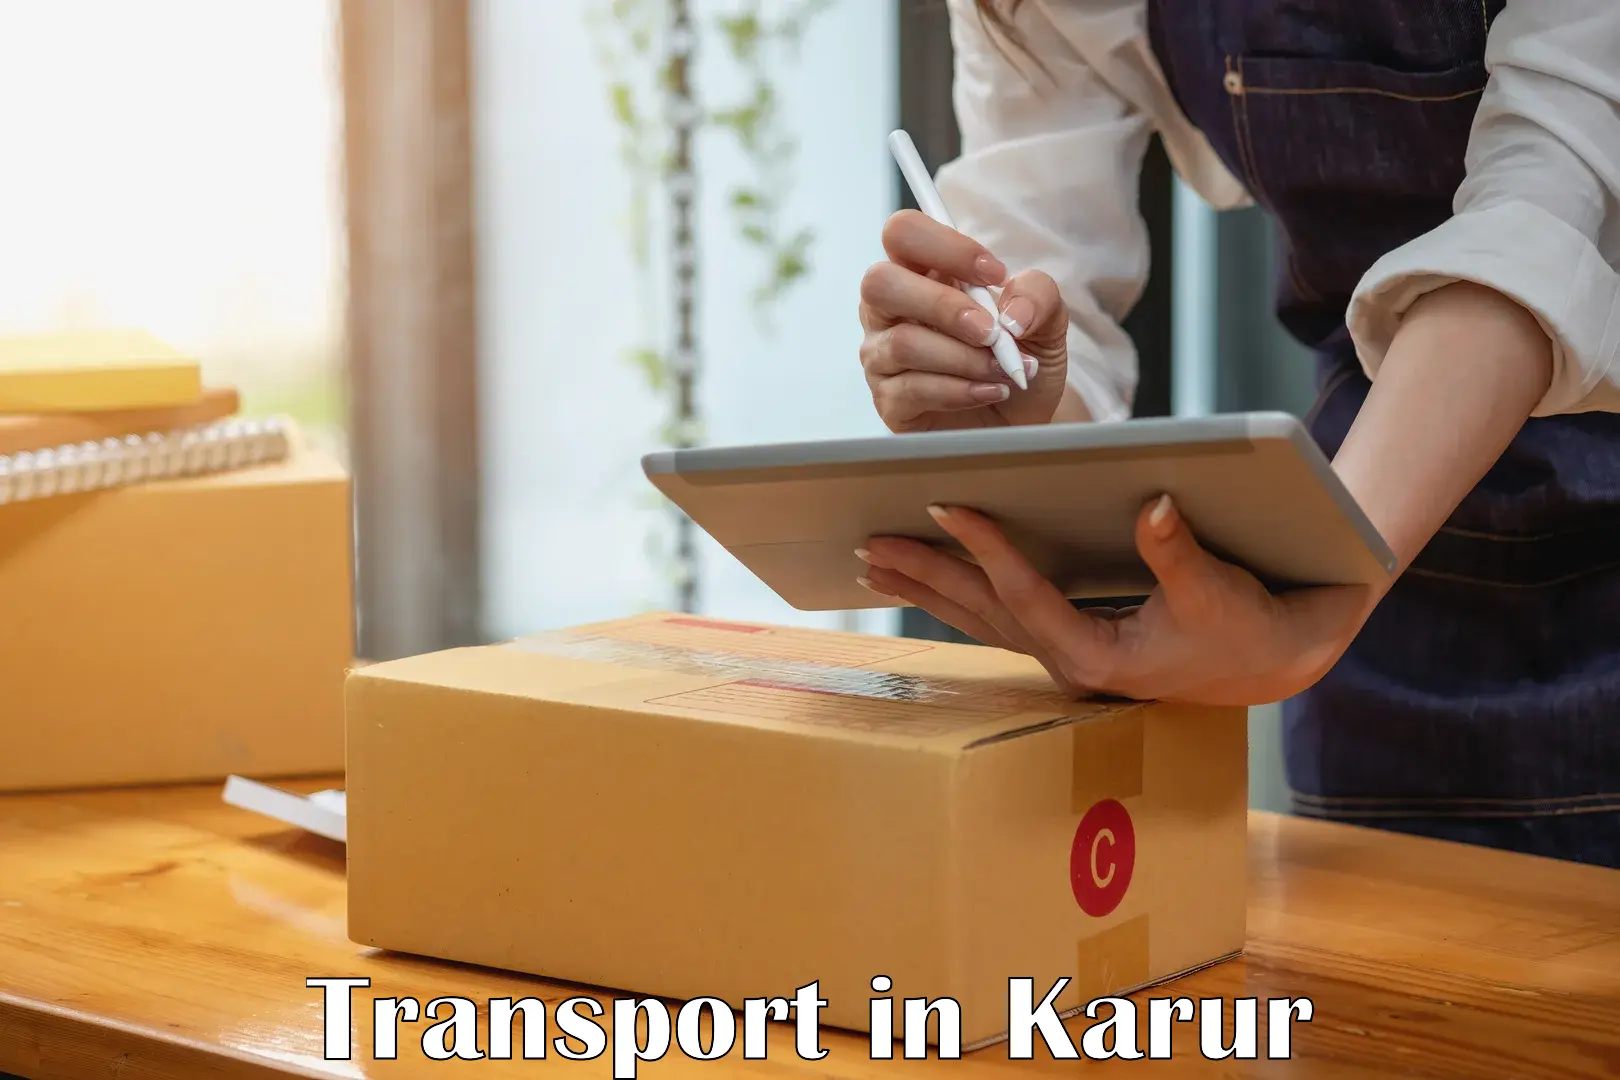 Land transport services in Karur